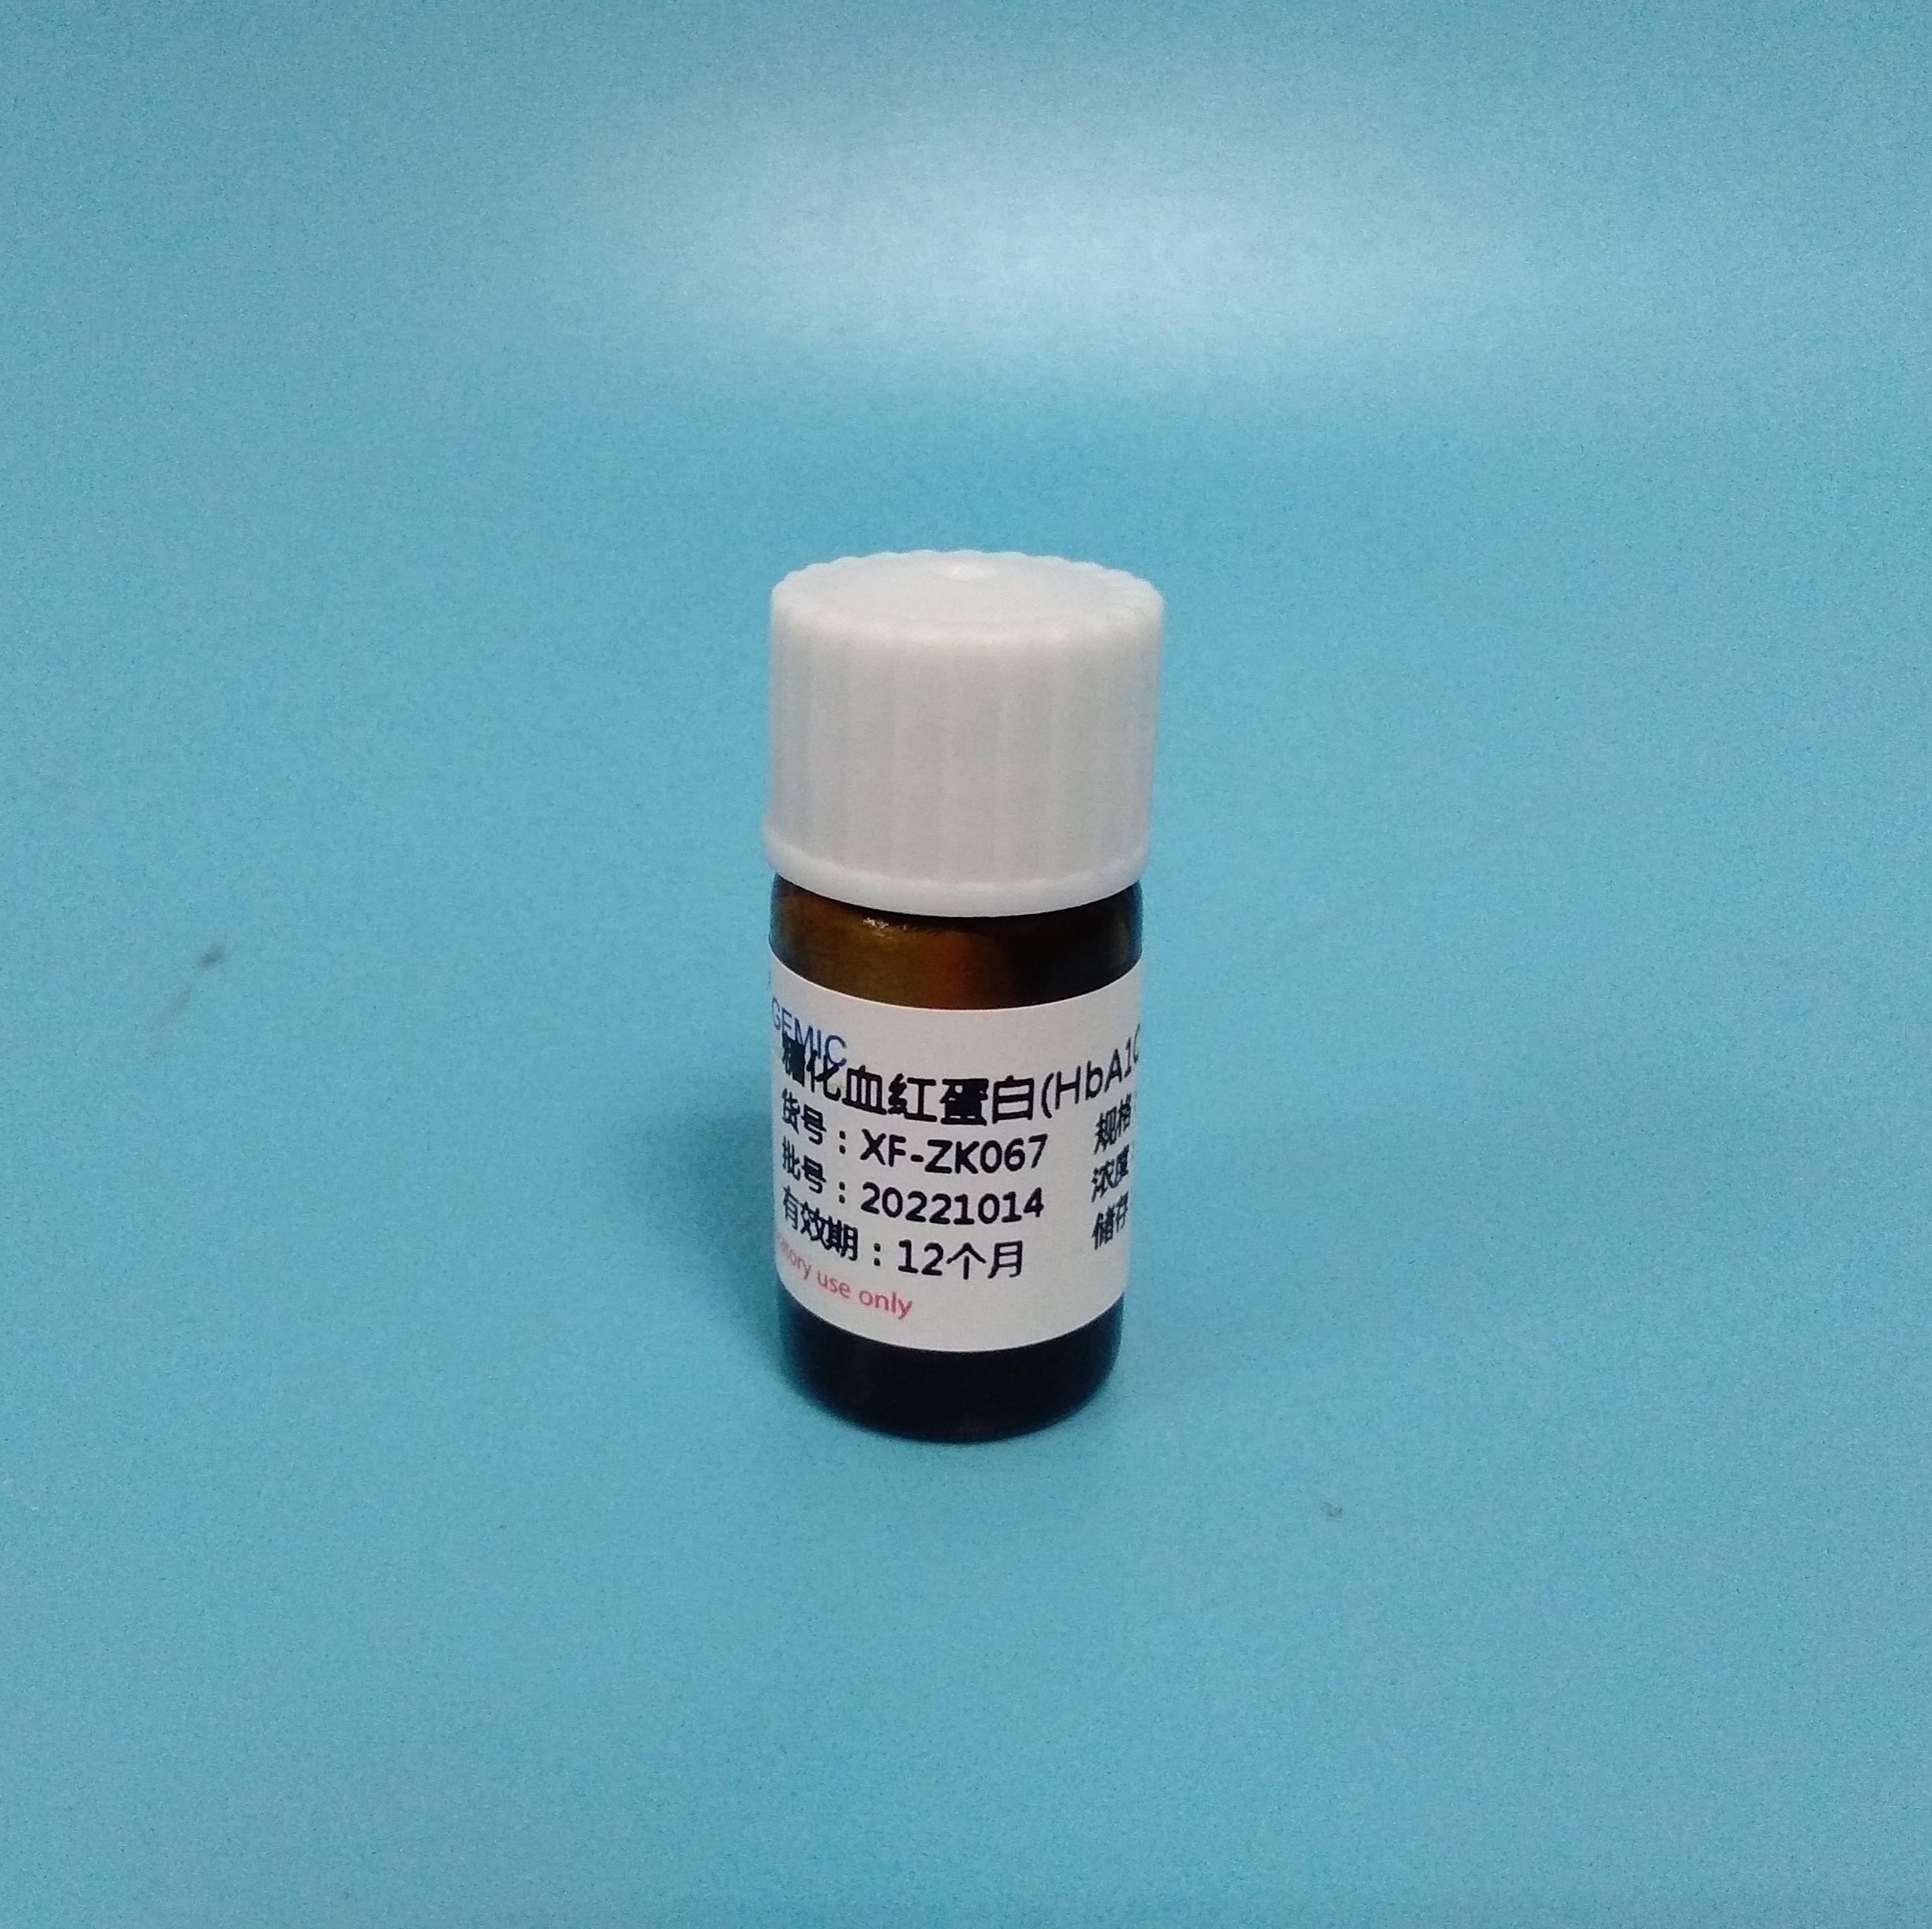 糖化血红蛋白(HbA1C)质控品